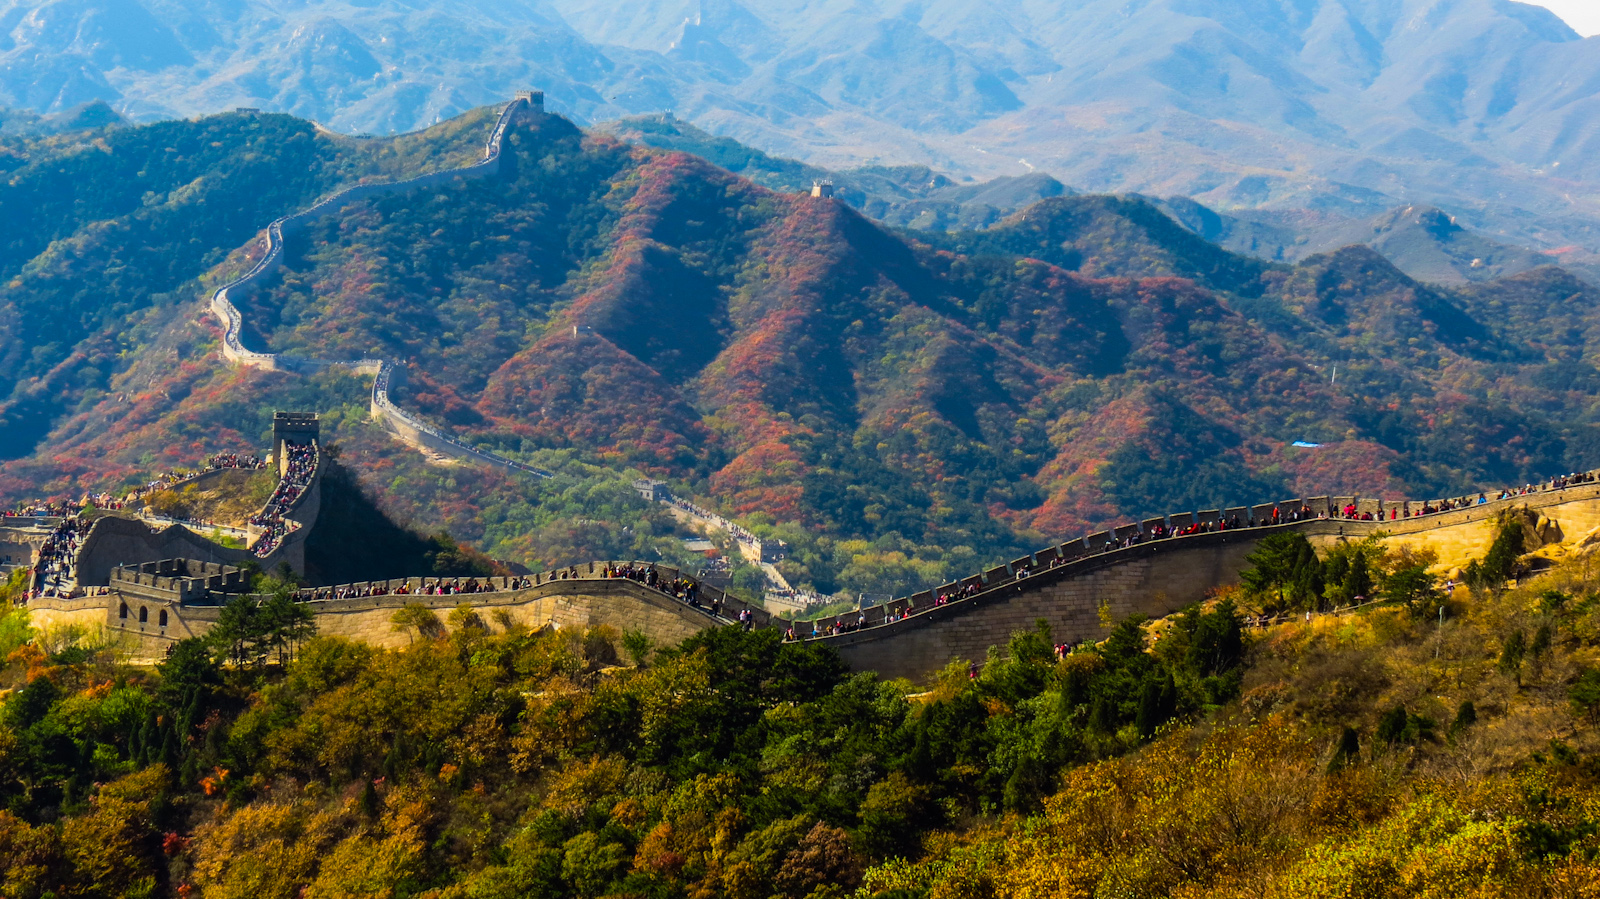 panorama-great-wall-of-china-badaling